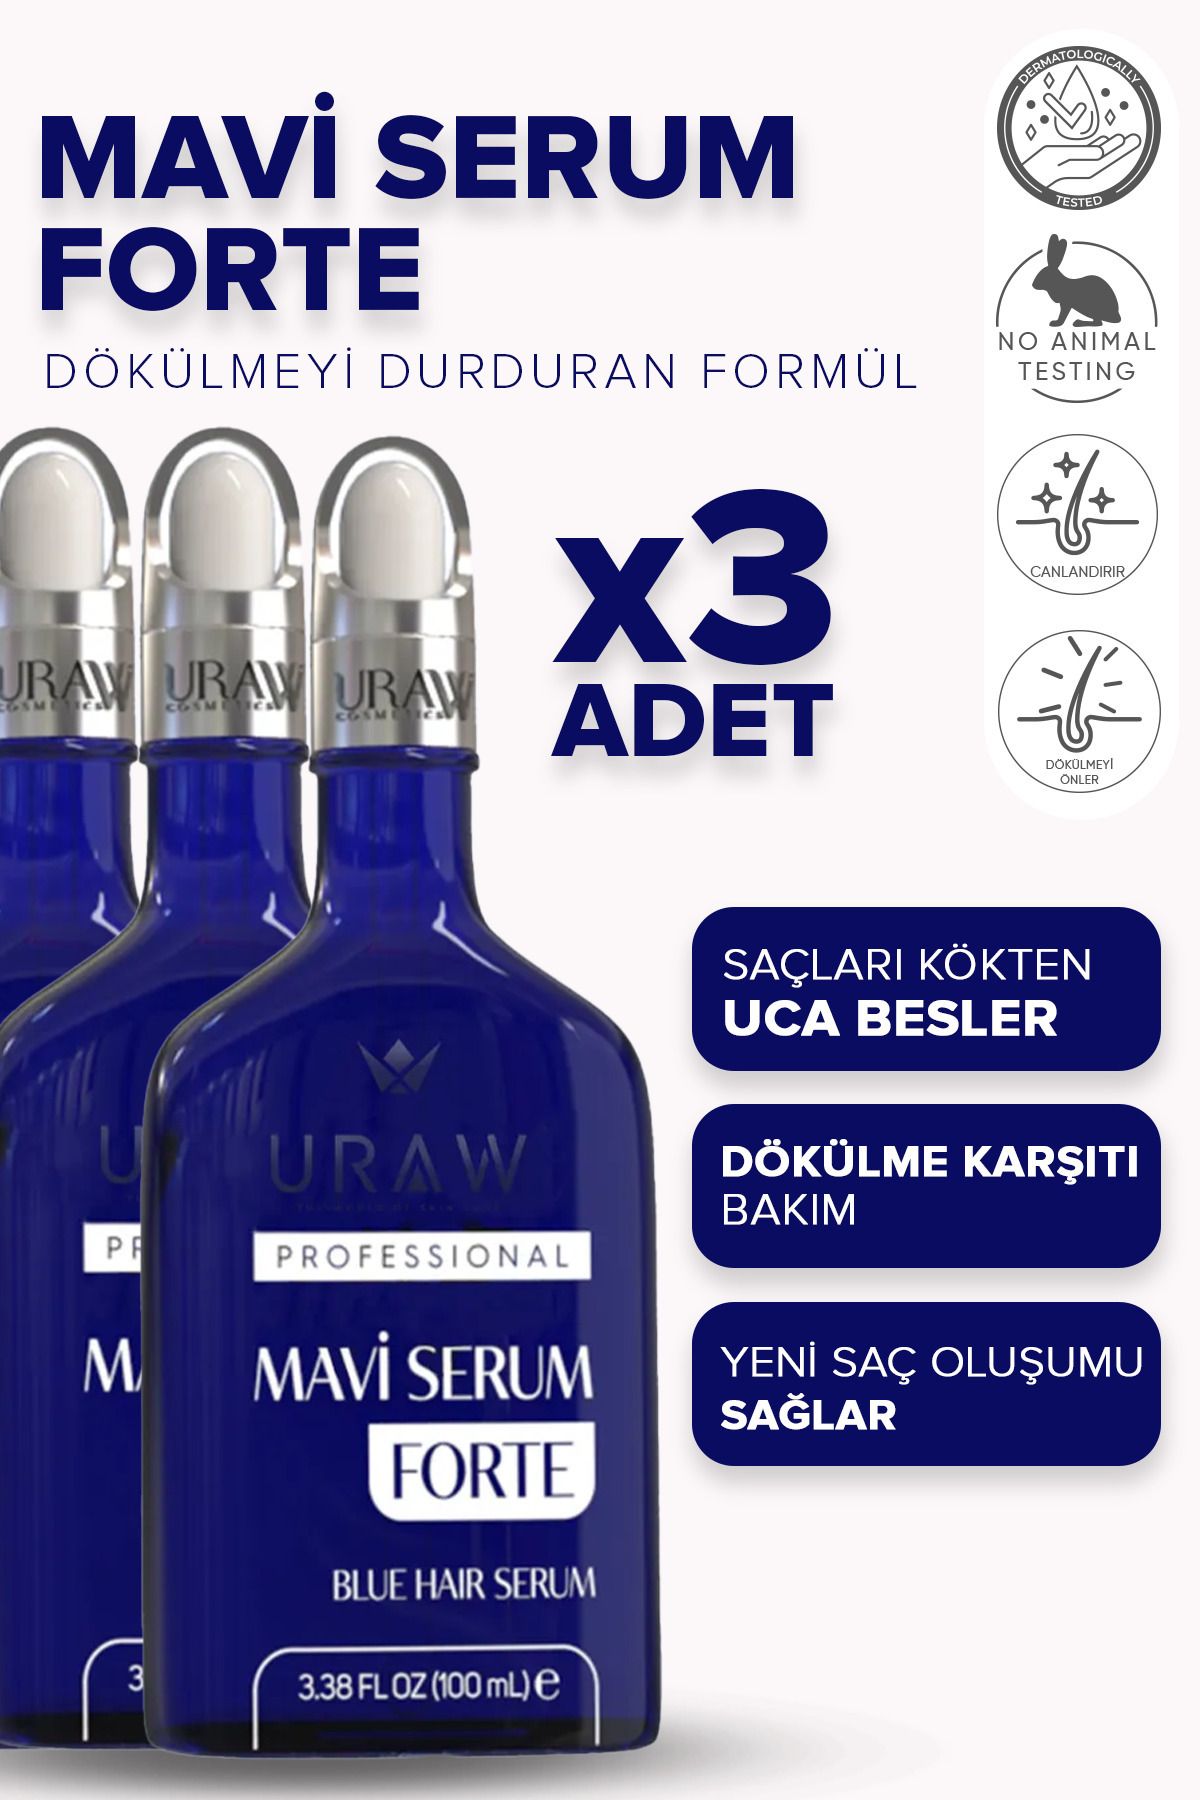 Uraw Mavi Serum Forte 3'lü Fırsat Paketi (Yeni Saç Oluşumu Sağlayan ve Dökülme Karşıtı Saç Bakım Serumu)